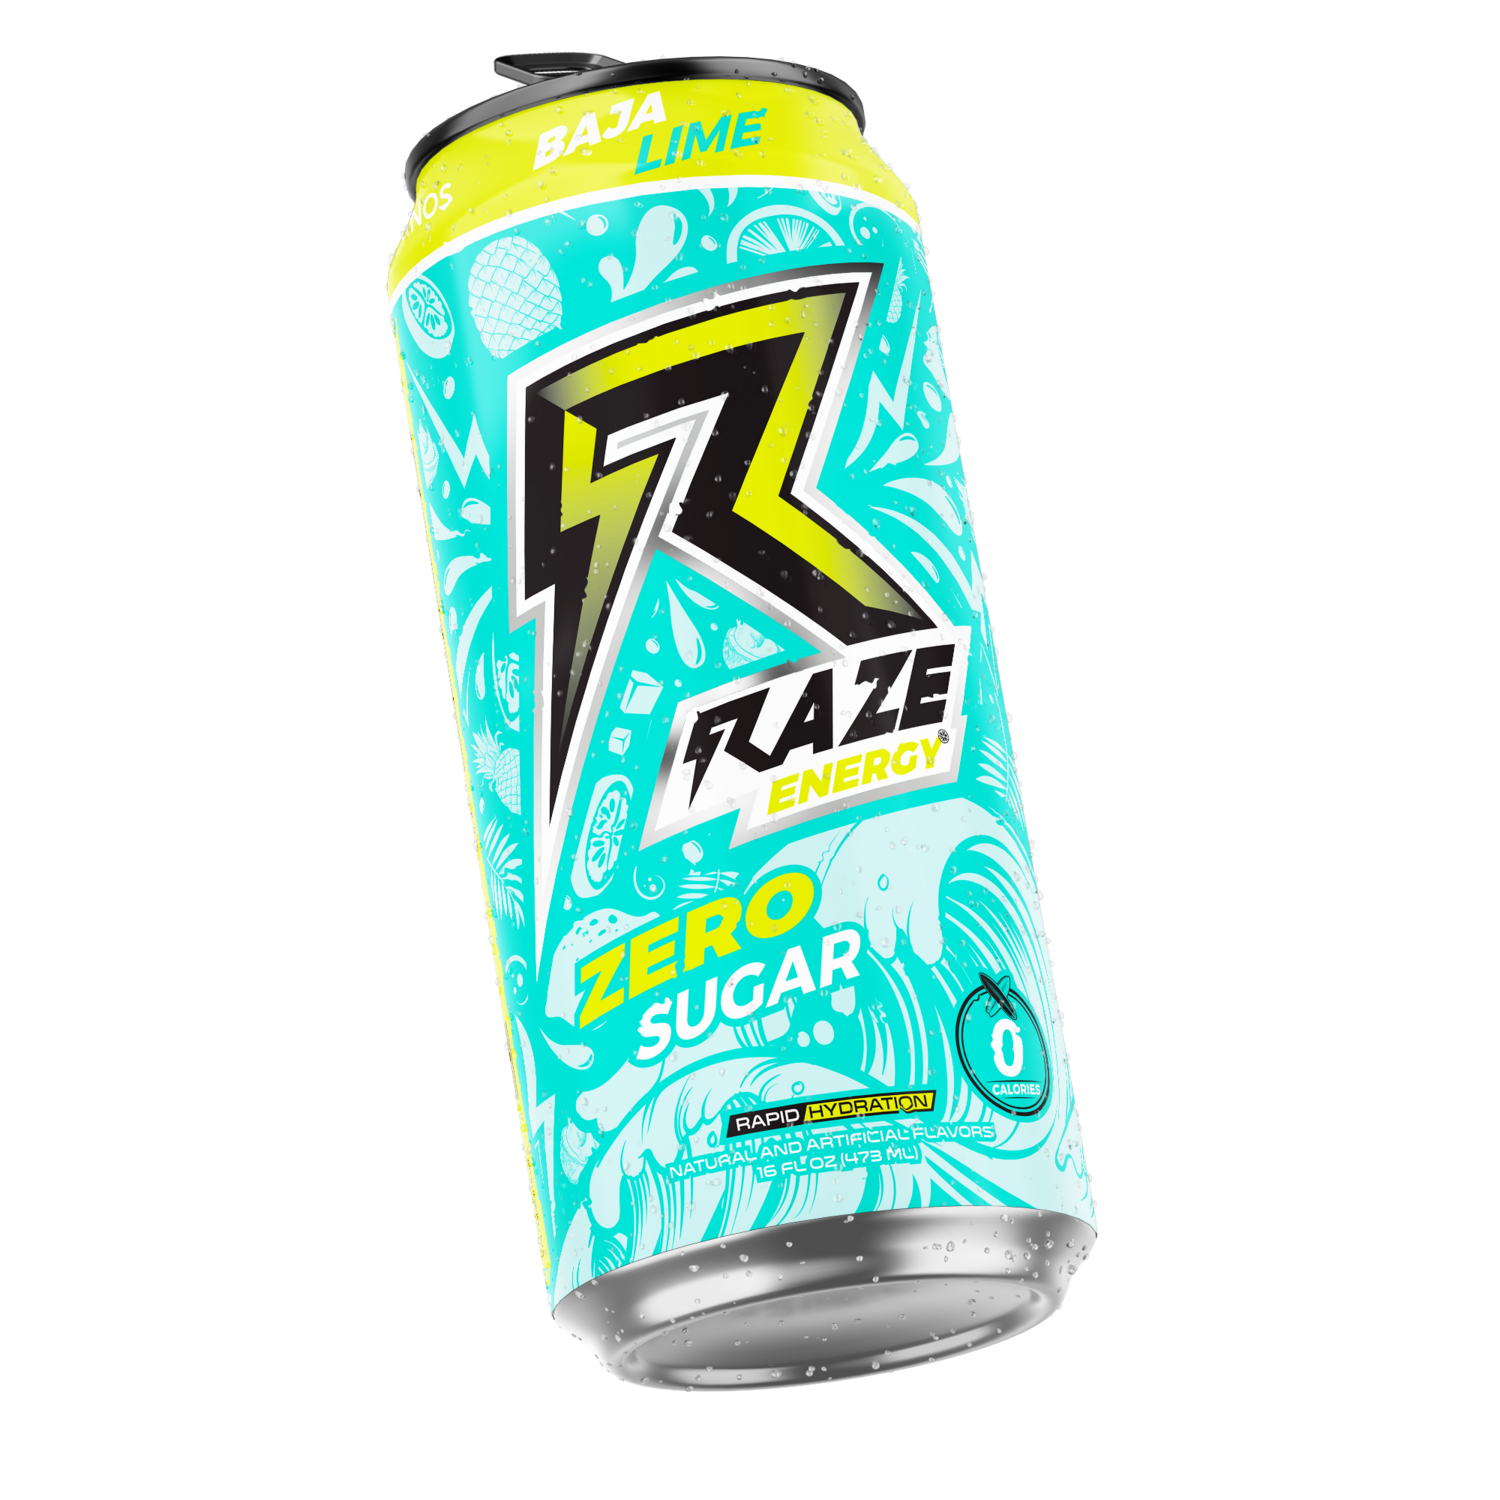 Raze Energy - Baja Lime 16oz. (One Can)